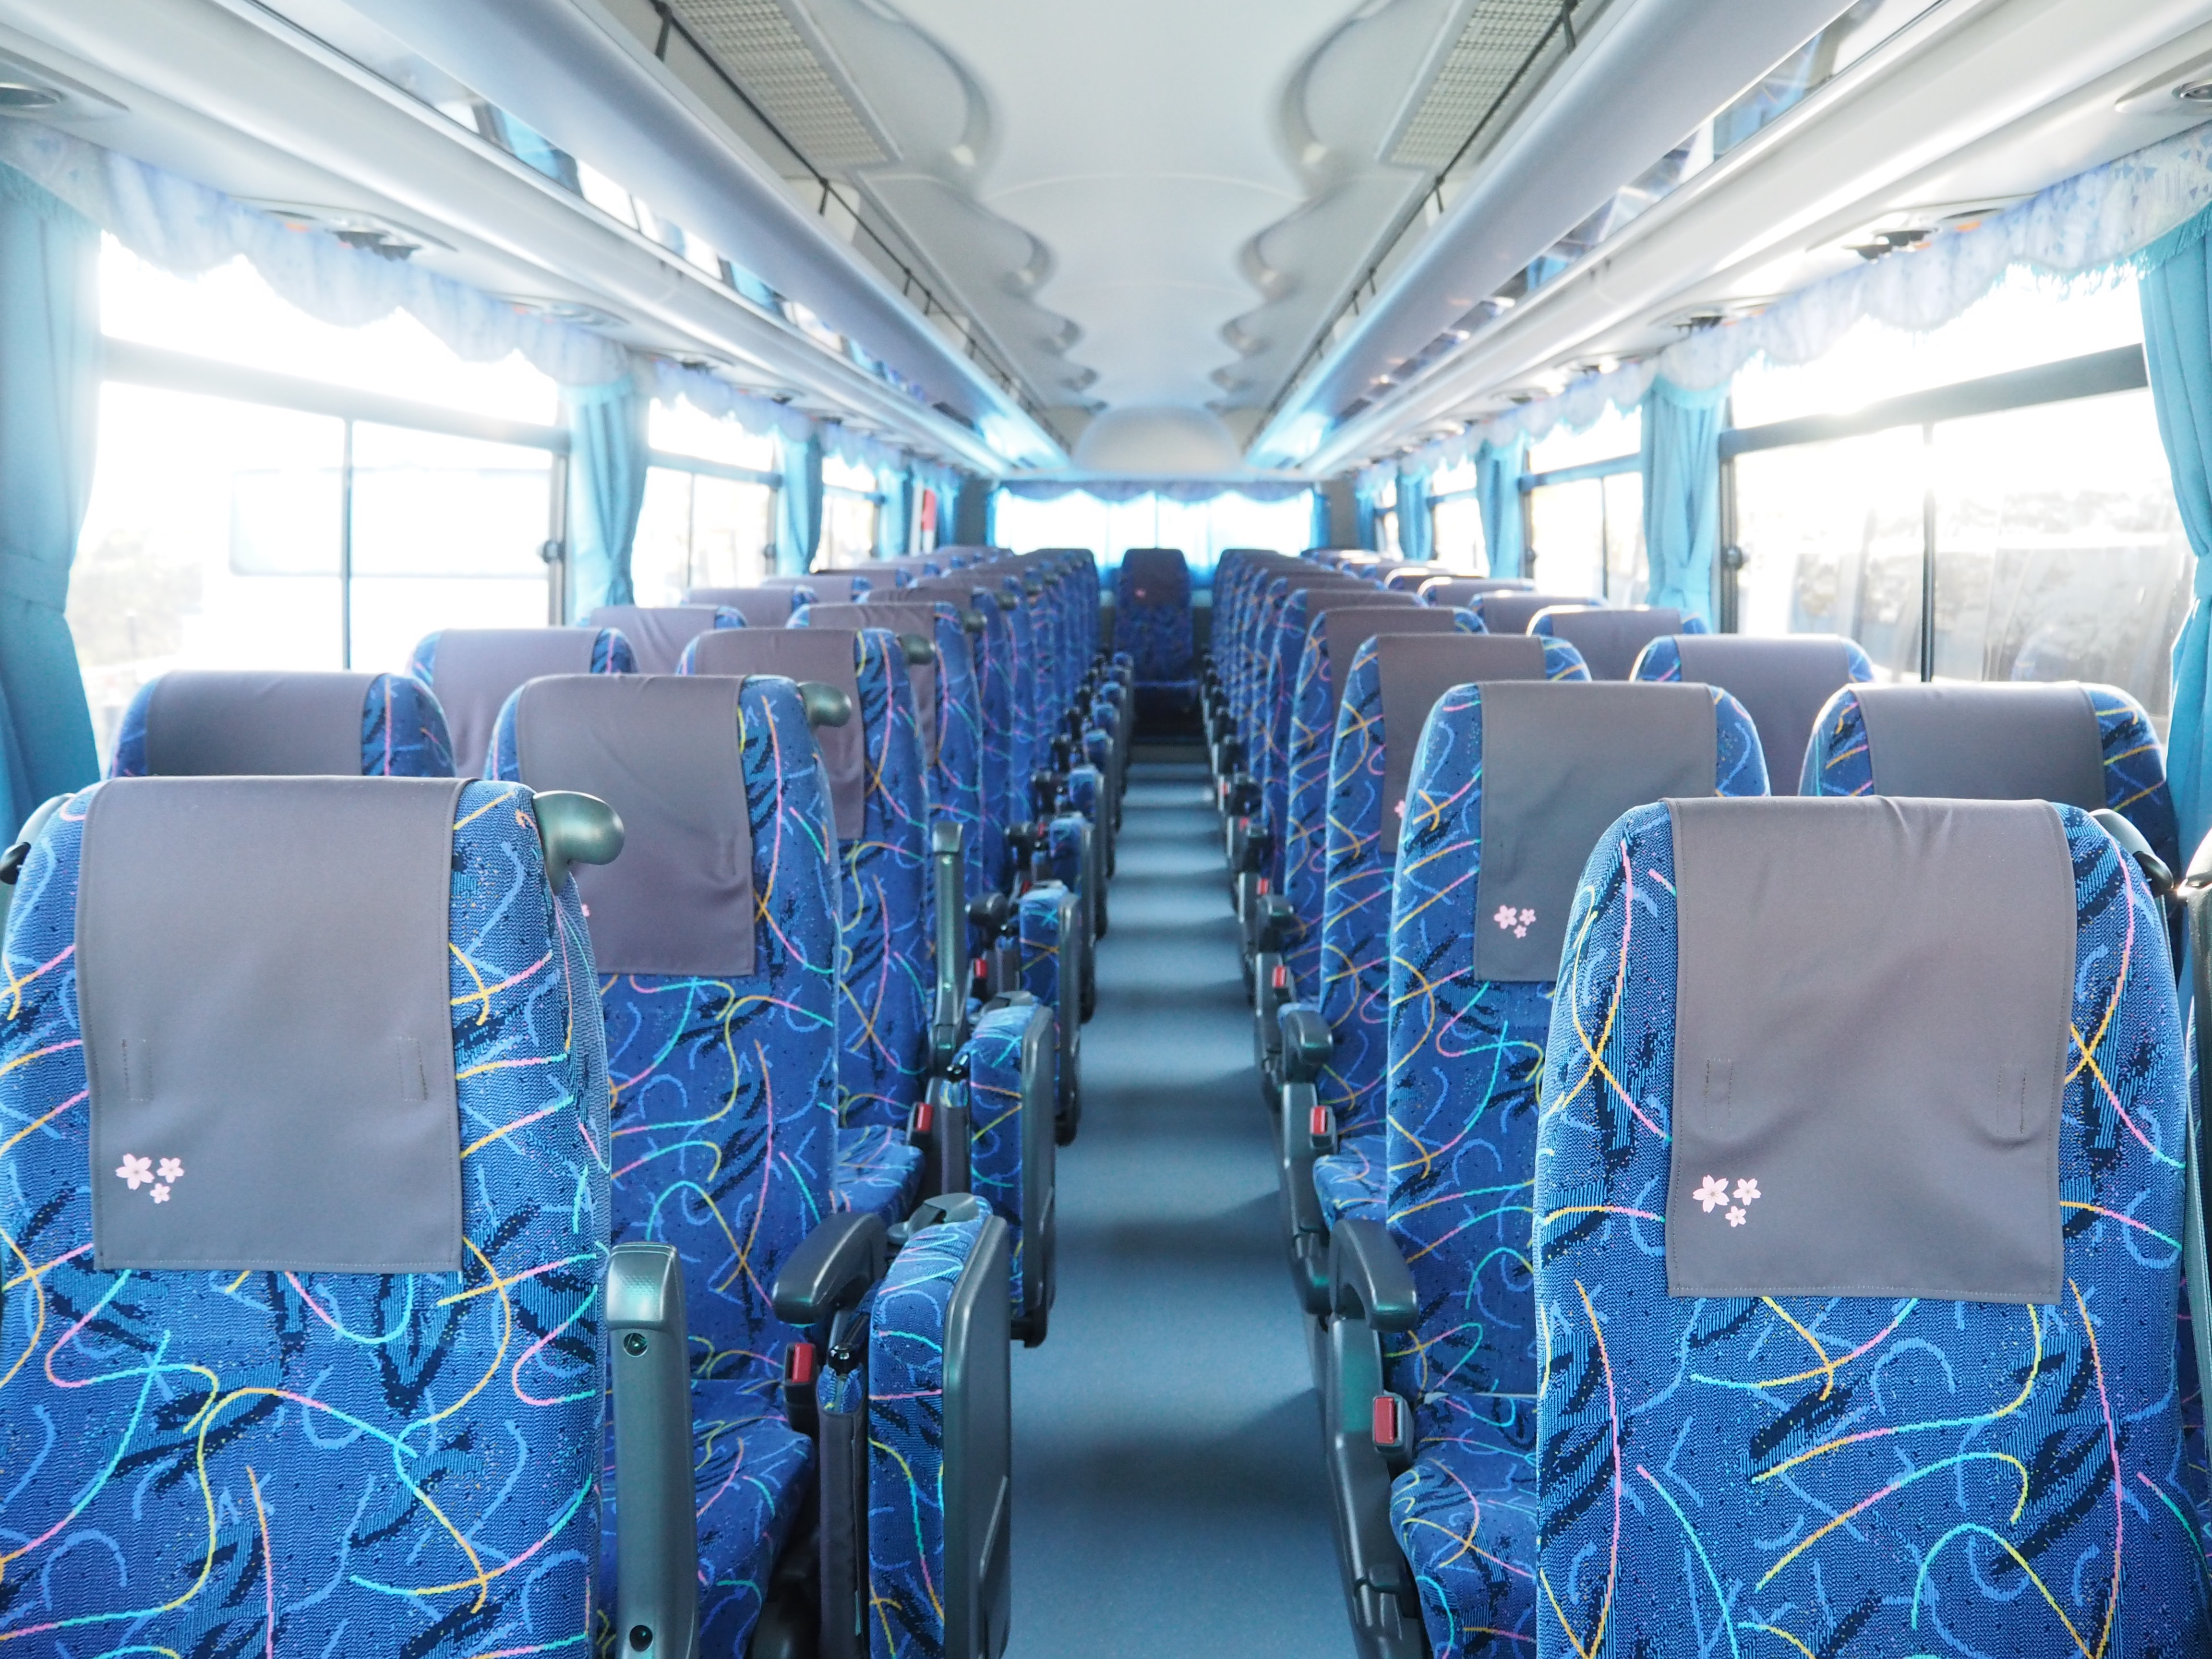 バス会社におけるコロナウイルス対策について画像